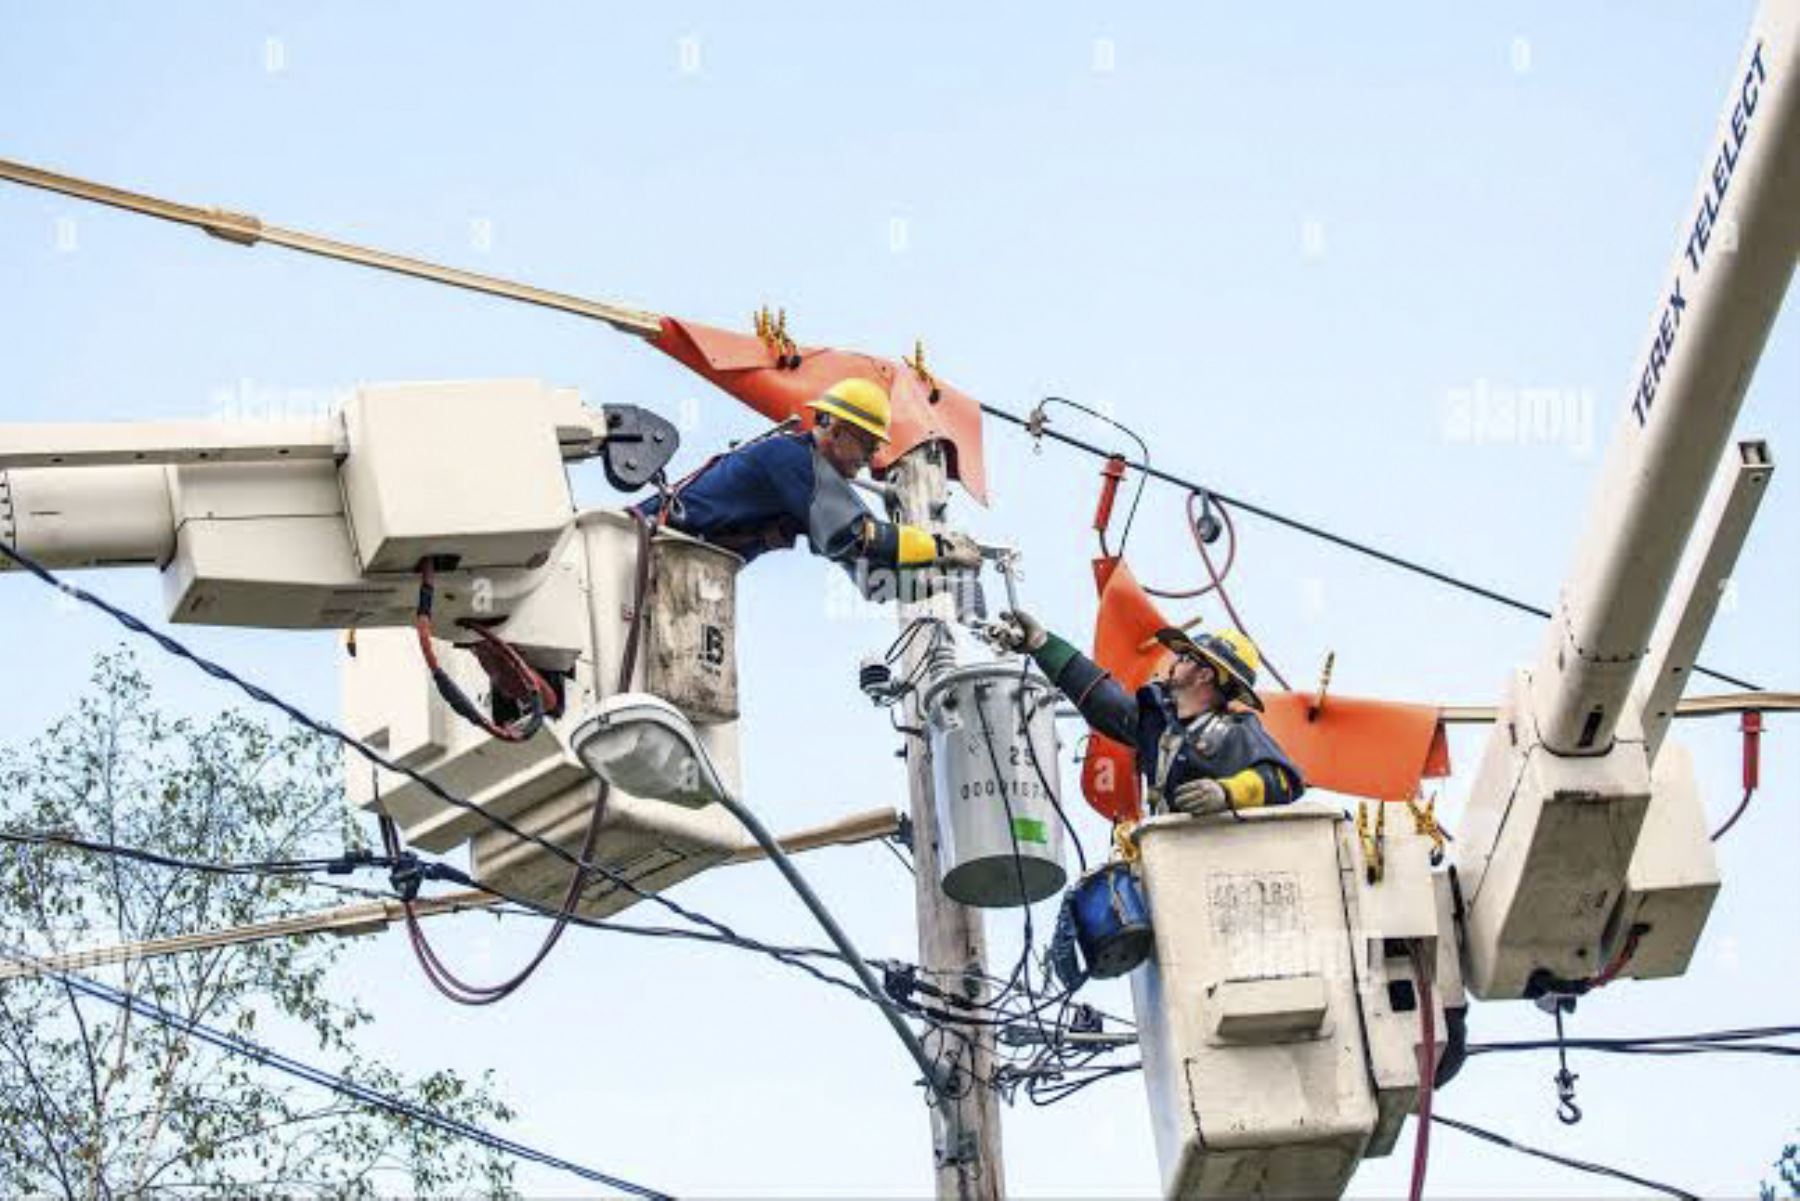 Habrá corte de energía eléctrica en Jayanca, Lambayeque, por trabajos de mantenimiento preventivo en redes eléctricas de media tensión. Foto: ANDINA/Difusión